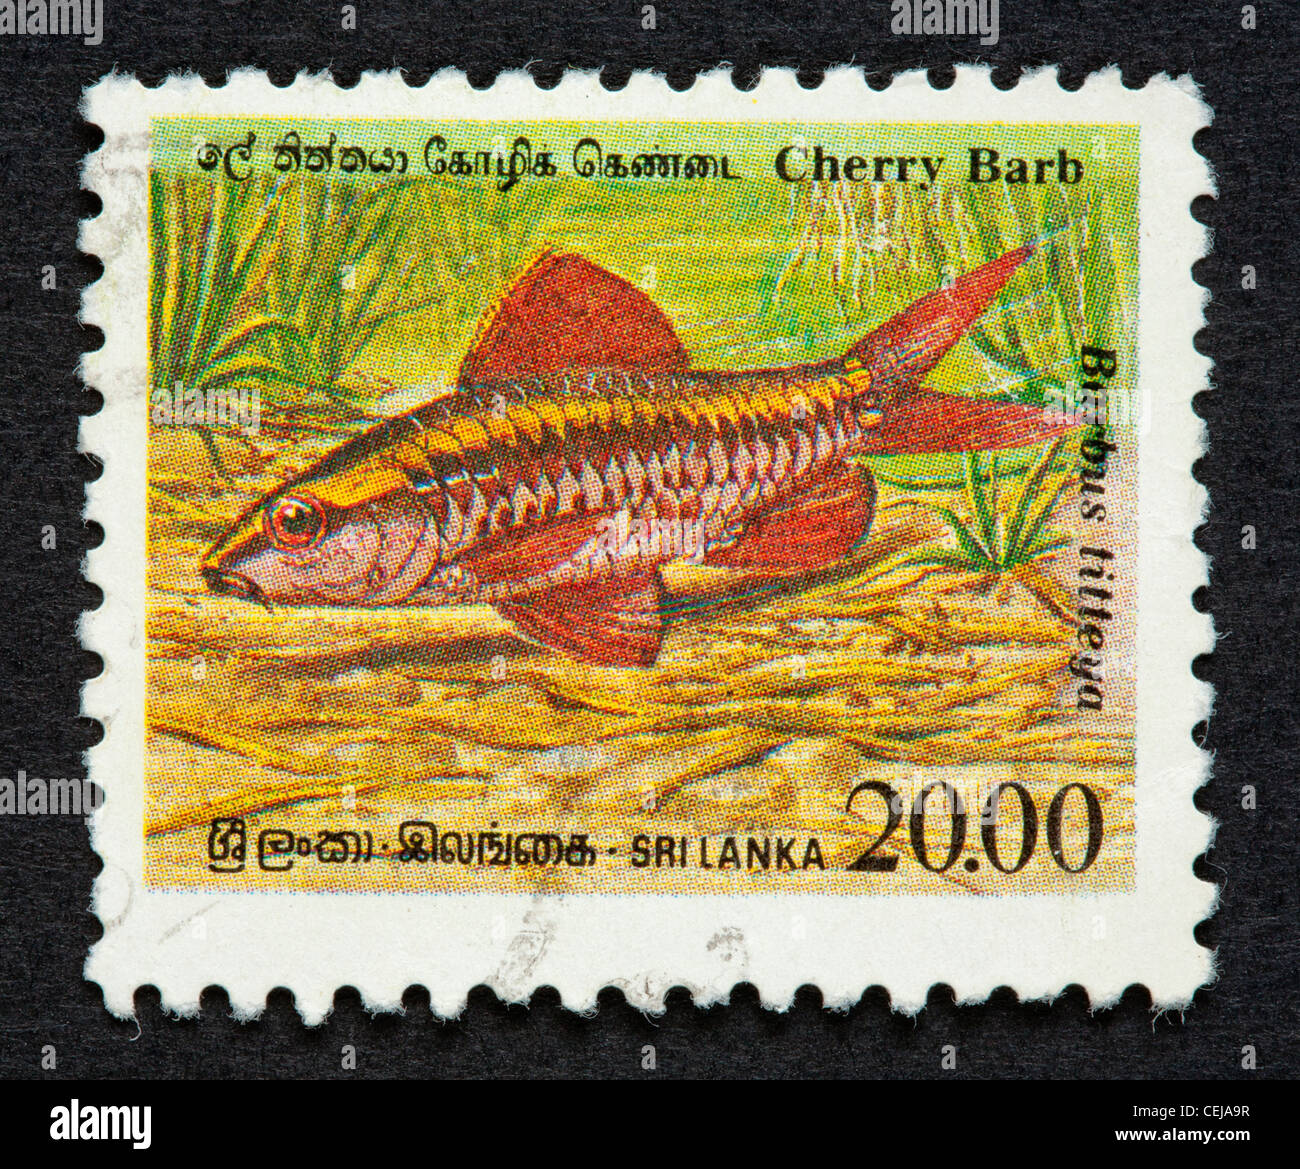 Sri Lankan postage stamp Stock Photo